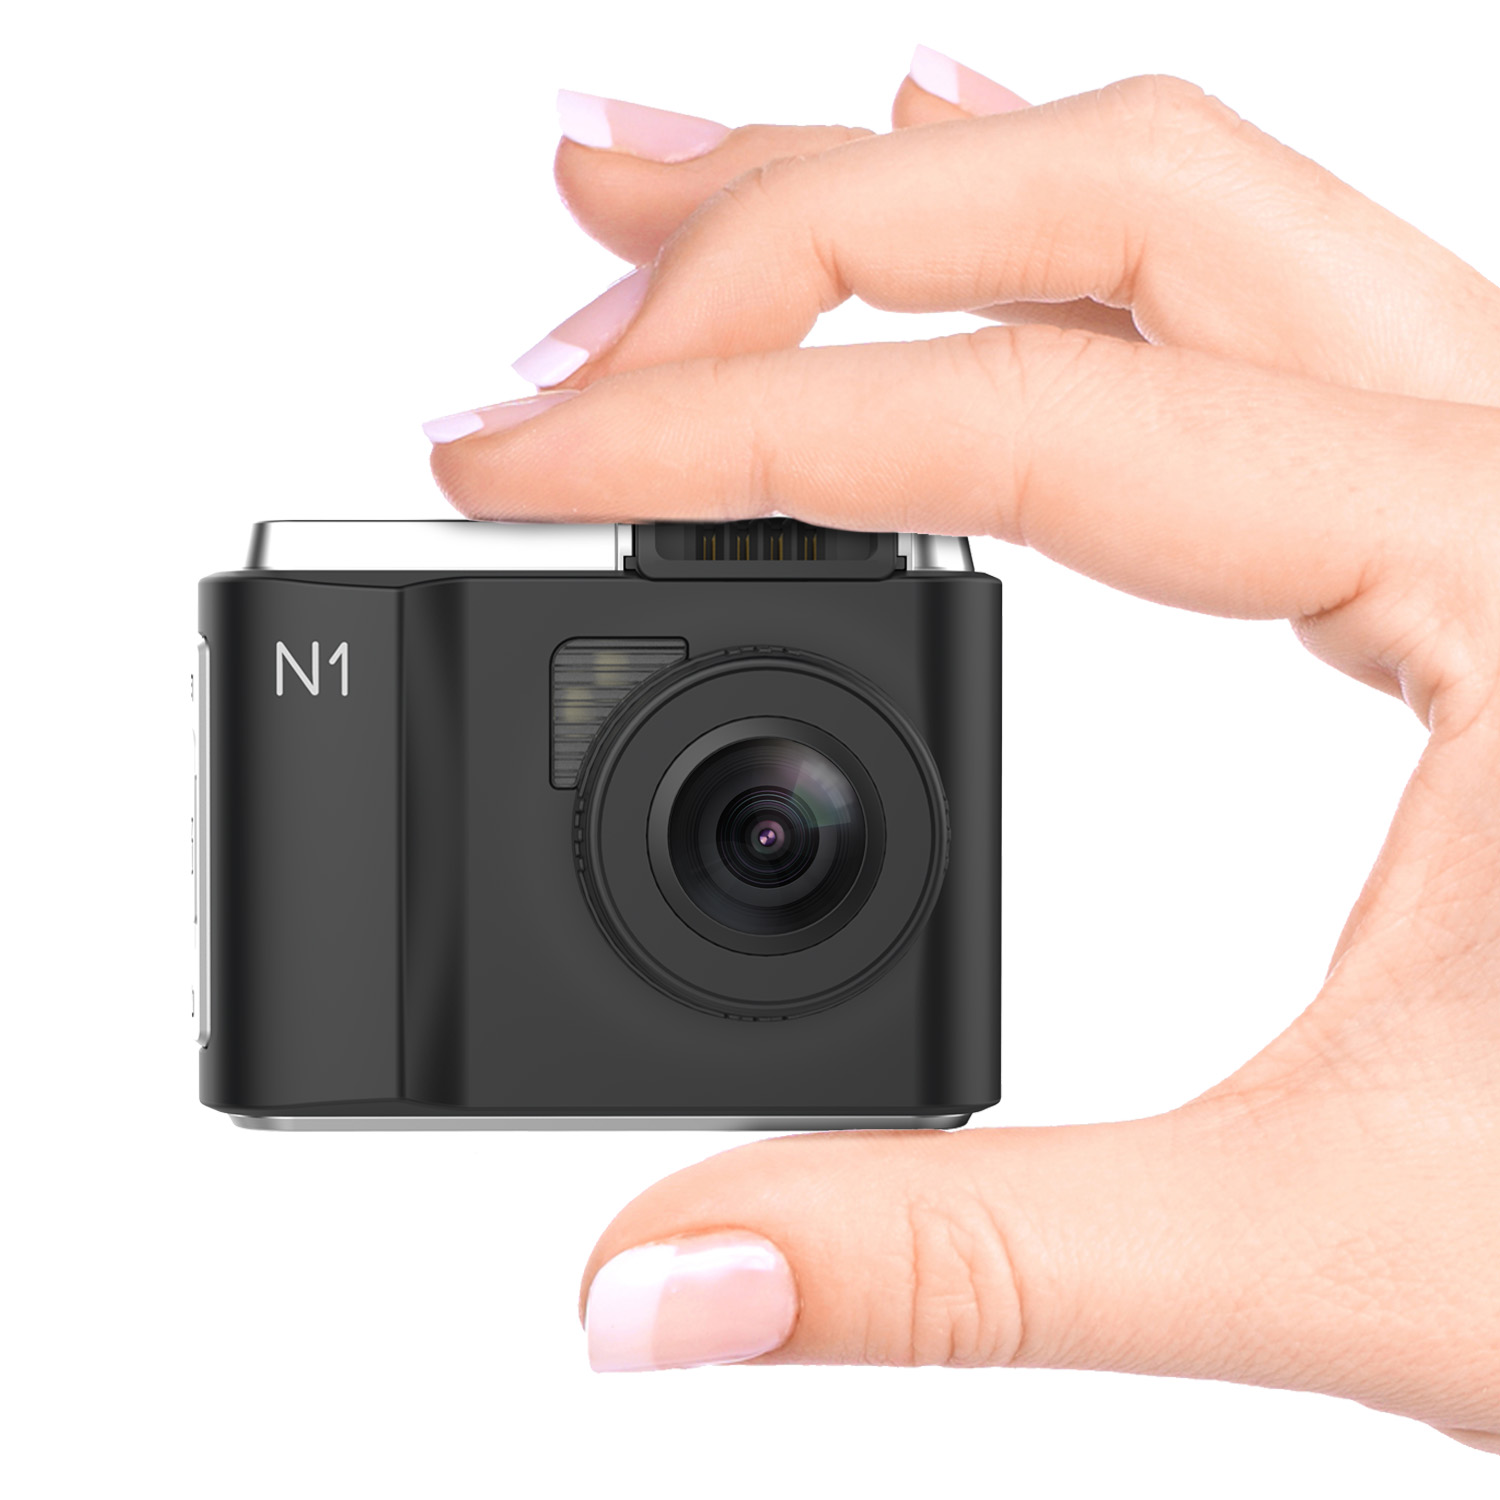 Vantrue OnDash N1 Pro dash cam review: A little gem of a basic dash cam